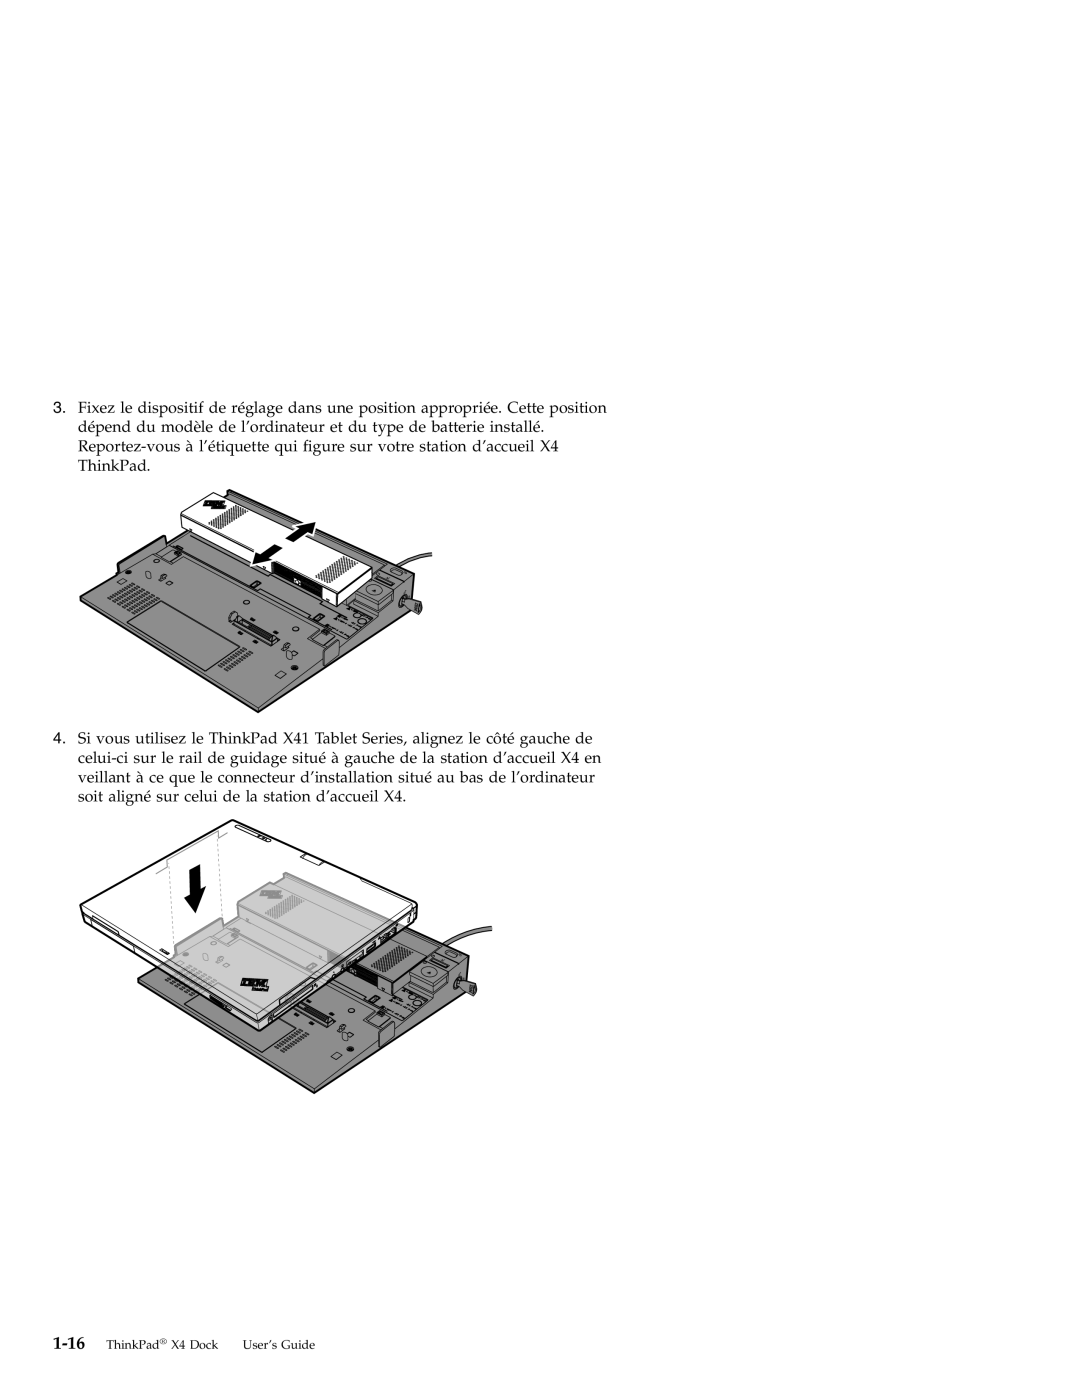 IBM manual ThinkPad X4 Dock User’s Guide 